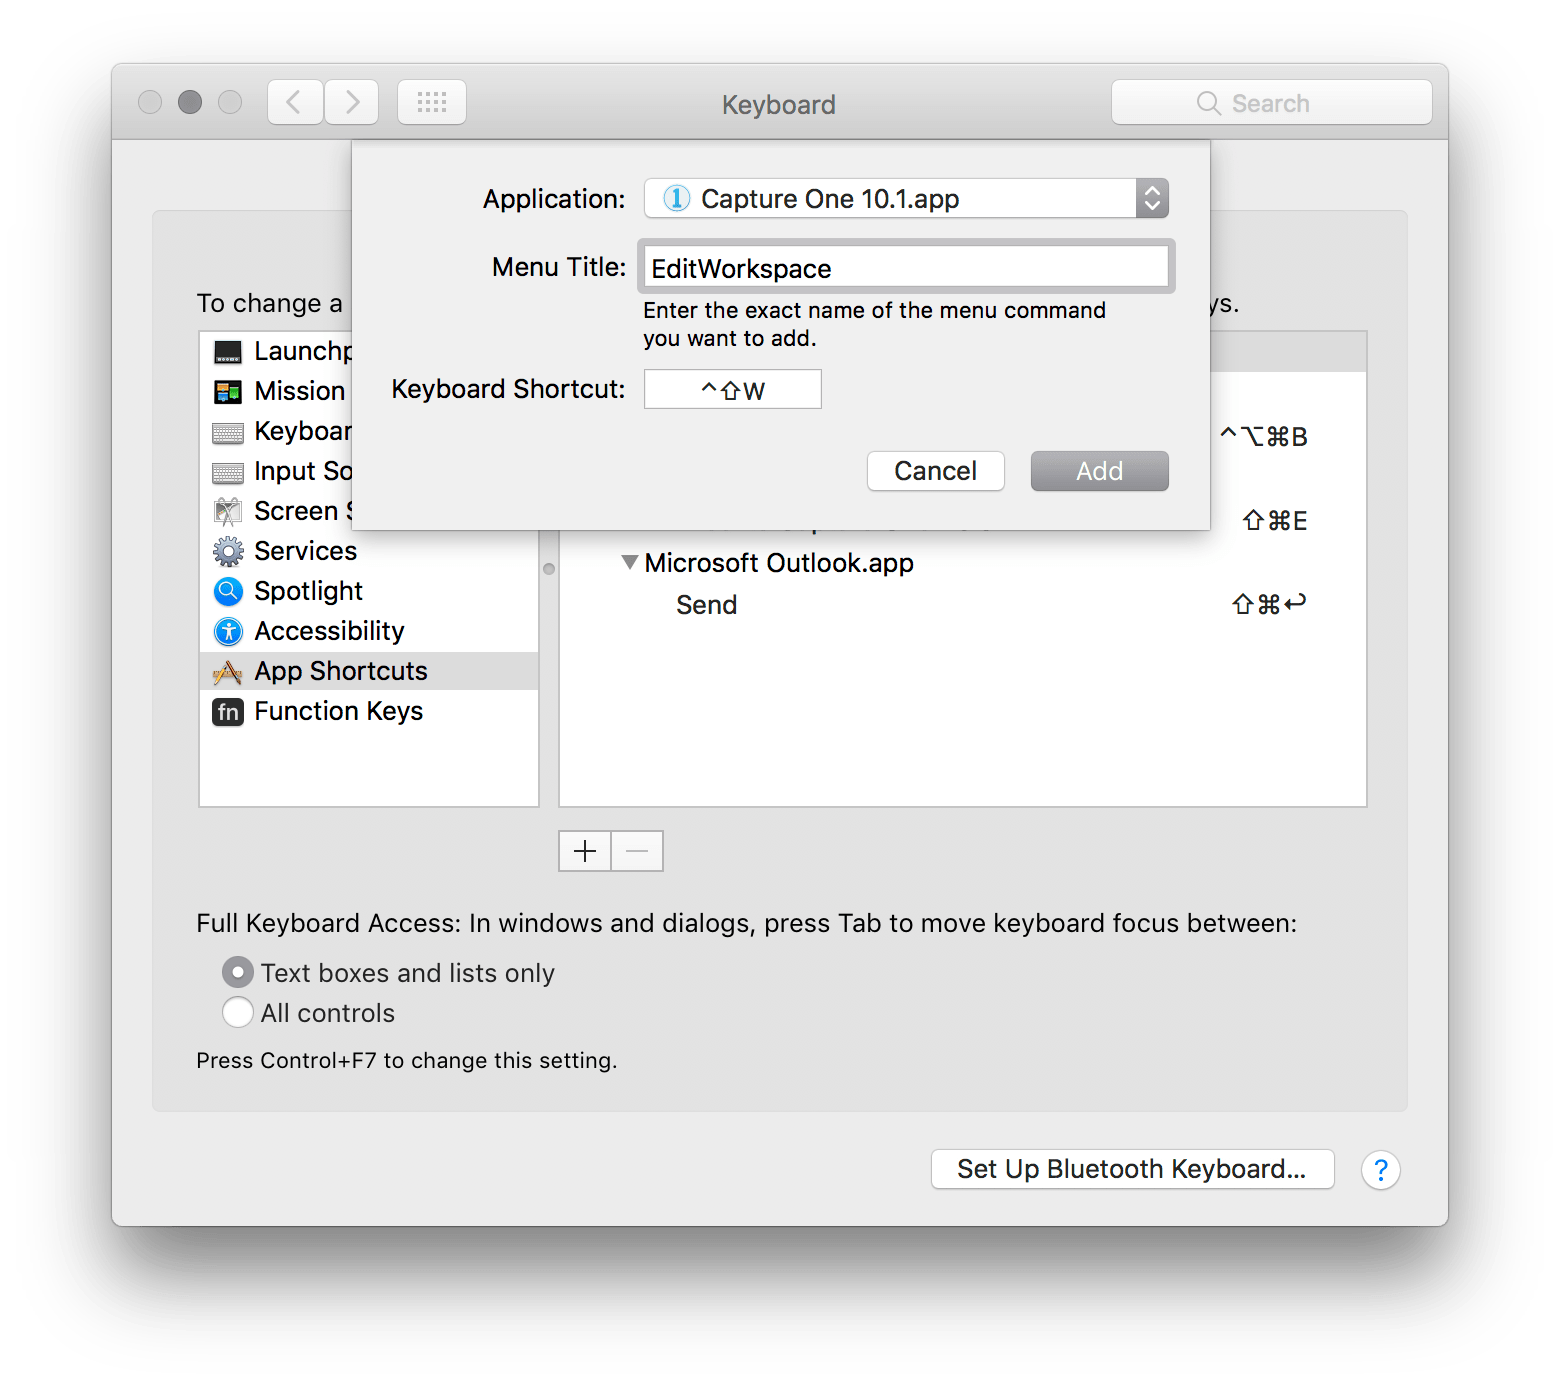 keyboard command for screenshot on mac